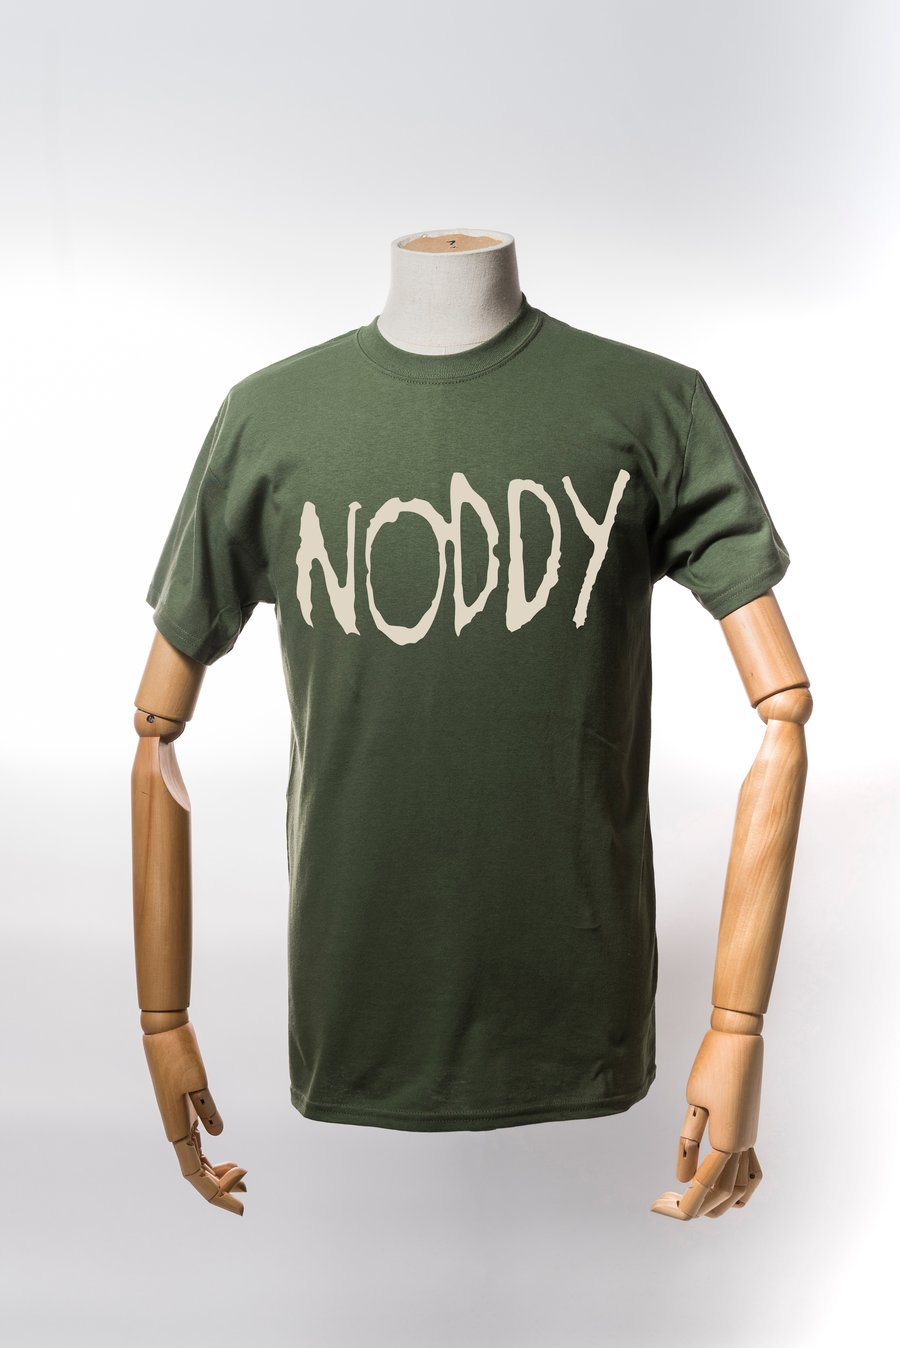 Image of Monkey Climber Roddy Noddy shirt I Olive